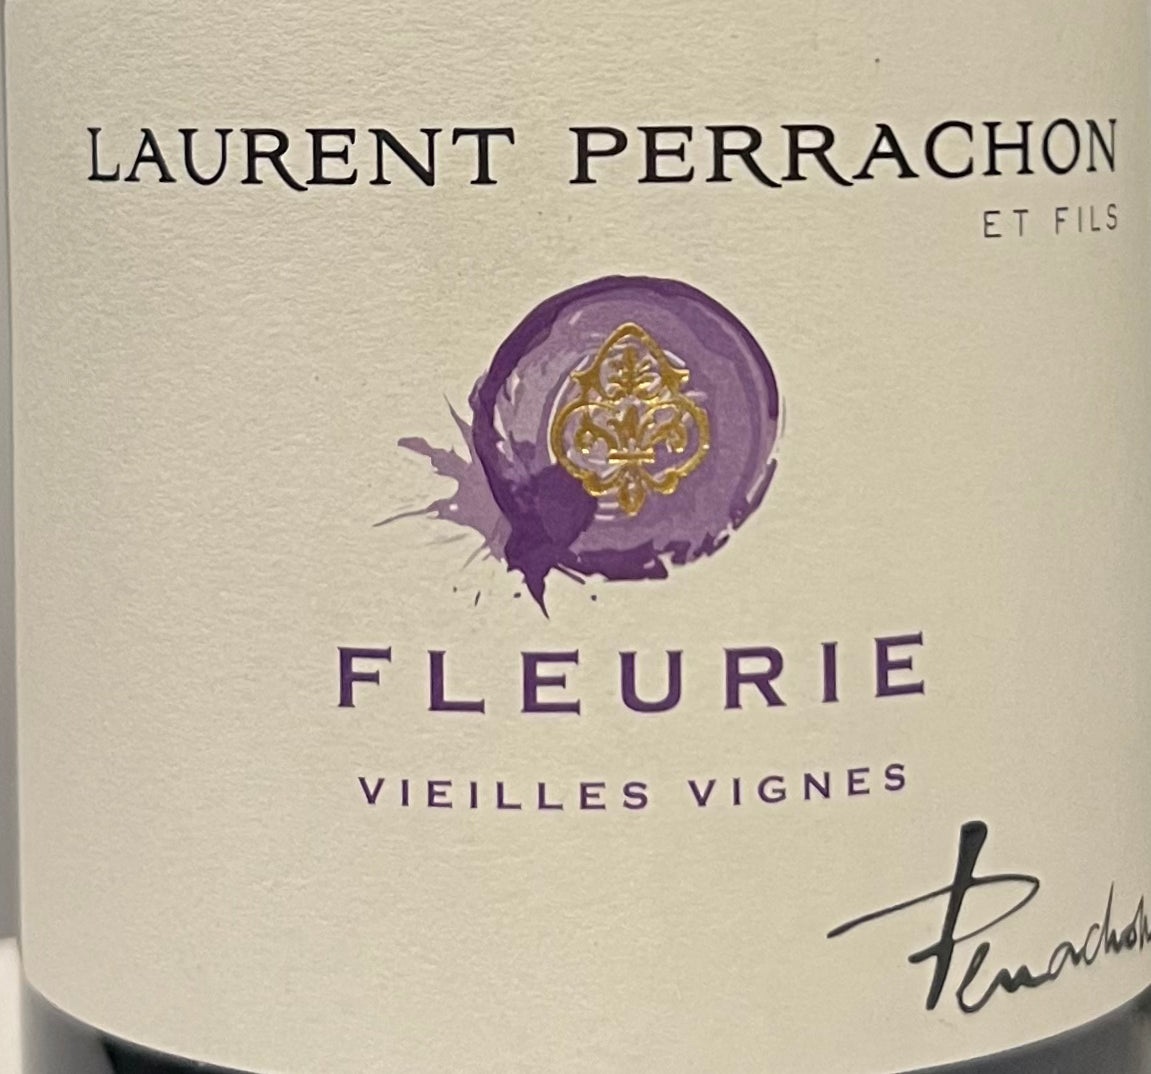 Laurent Perrachon 'Vieilles Vignes' -  Gamay